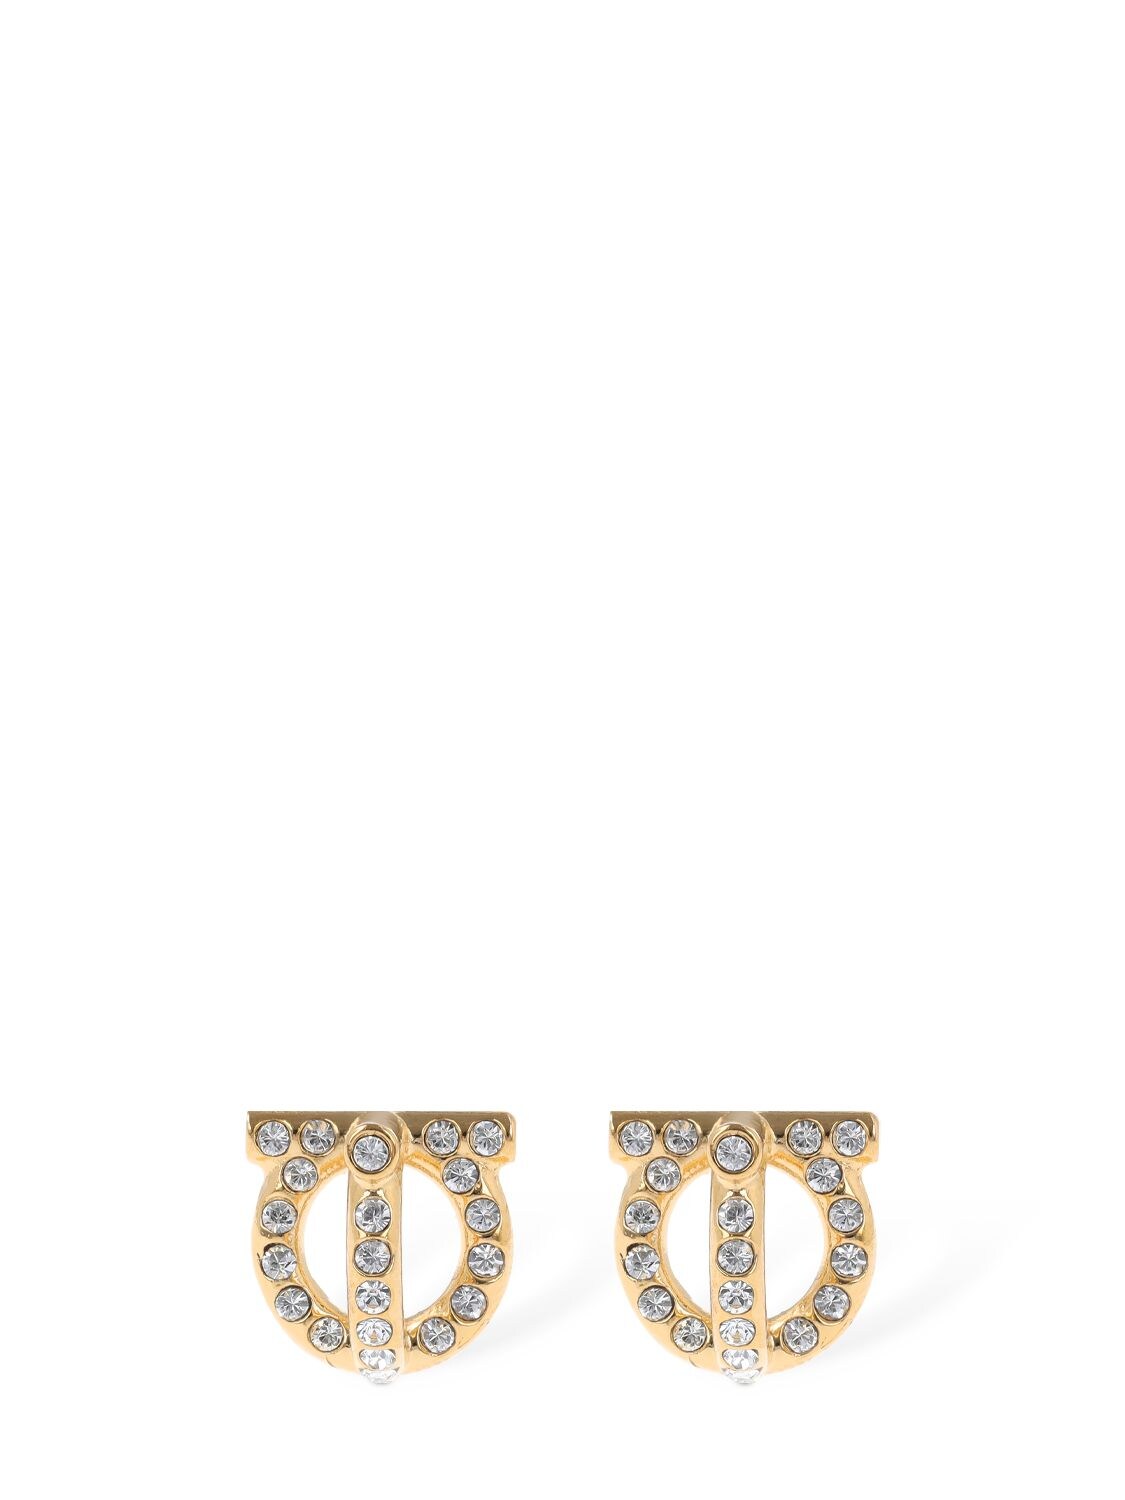 3d Gancio Crystal Stud Earrings